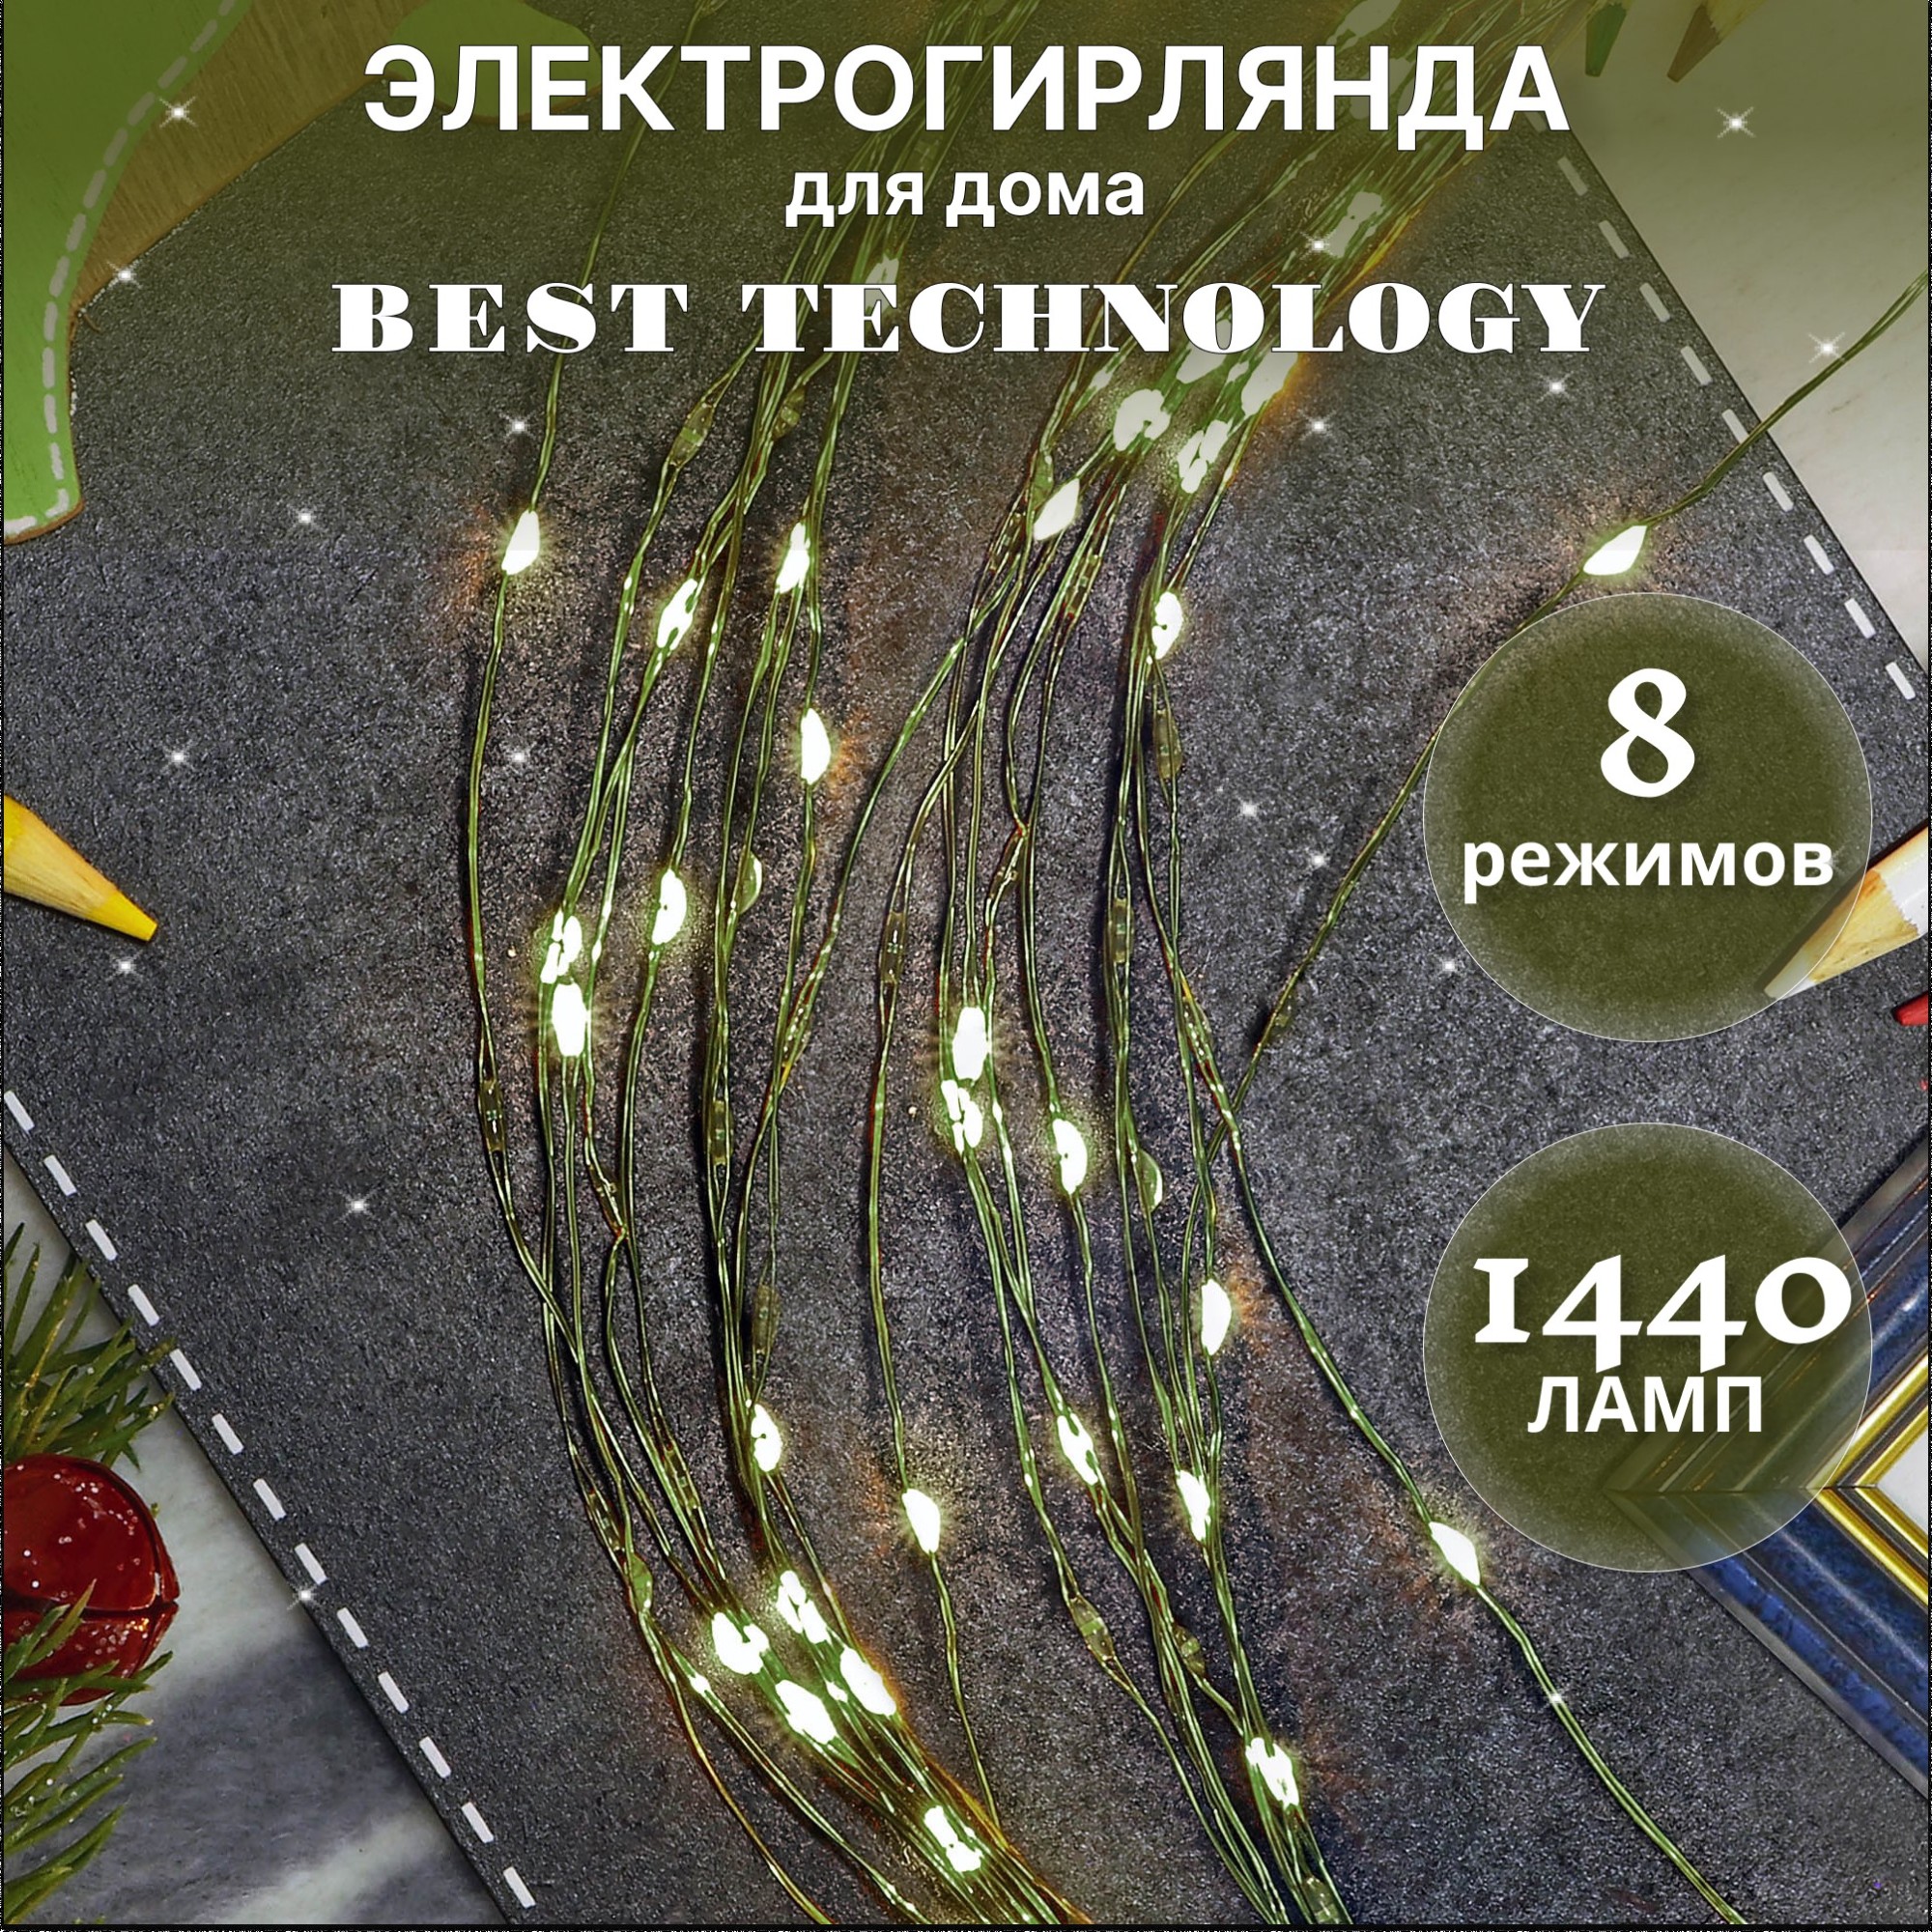 Электрогирлянда Best Technology 1440 LED 175 см со стартовым шнуром, цвет зеленый - фото 2